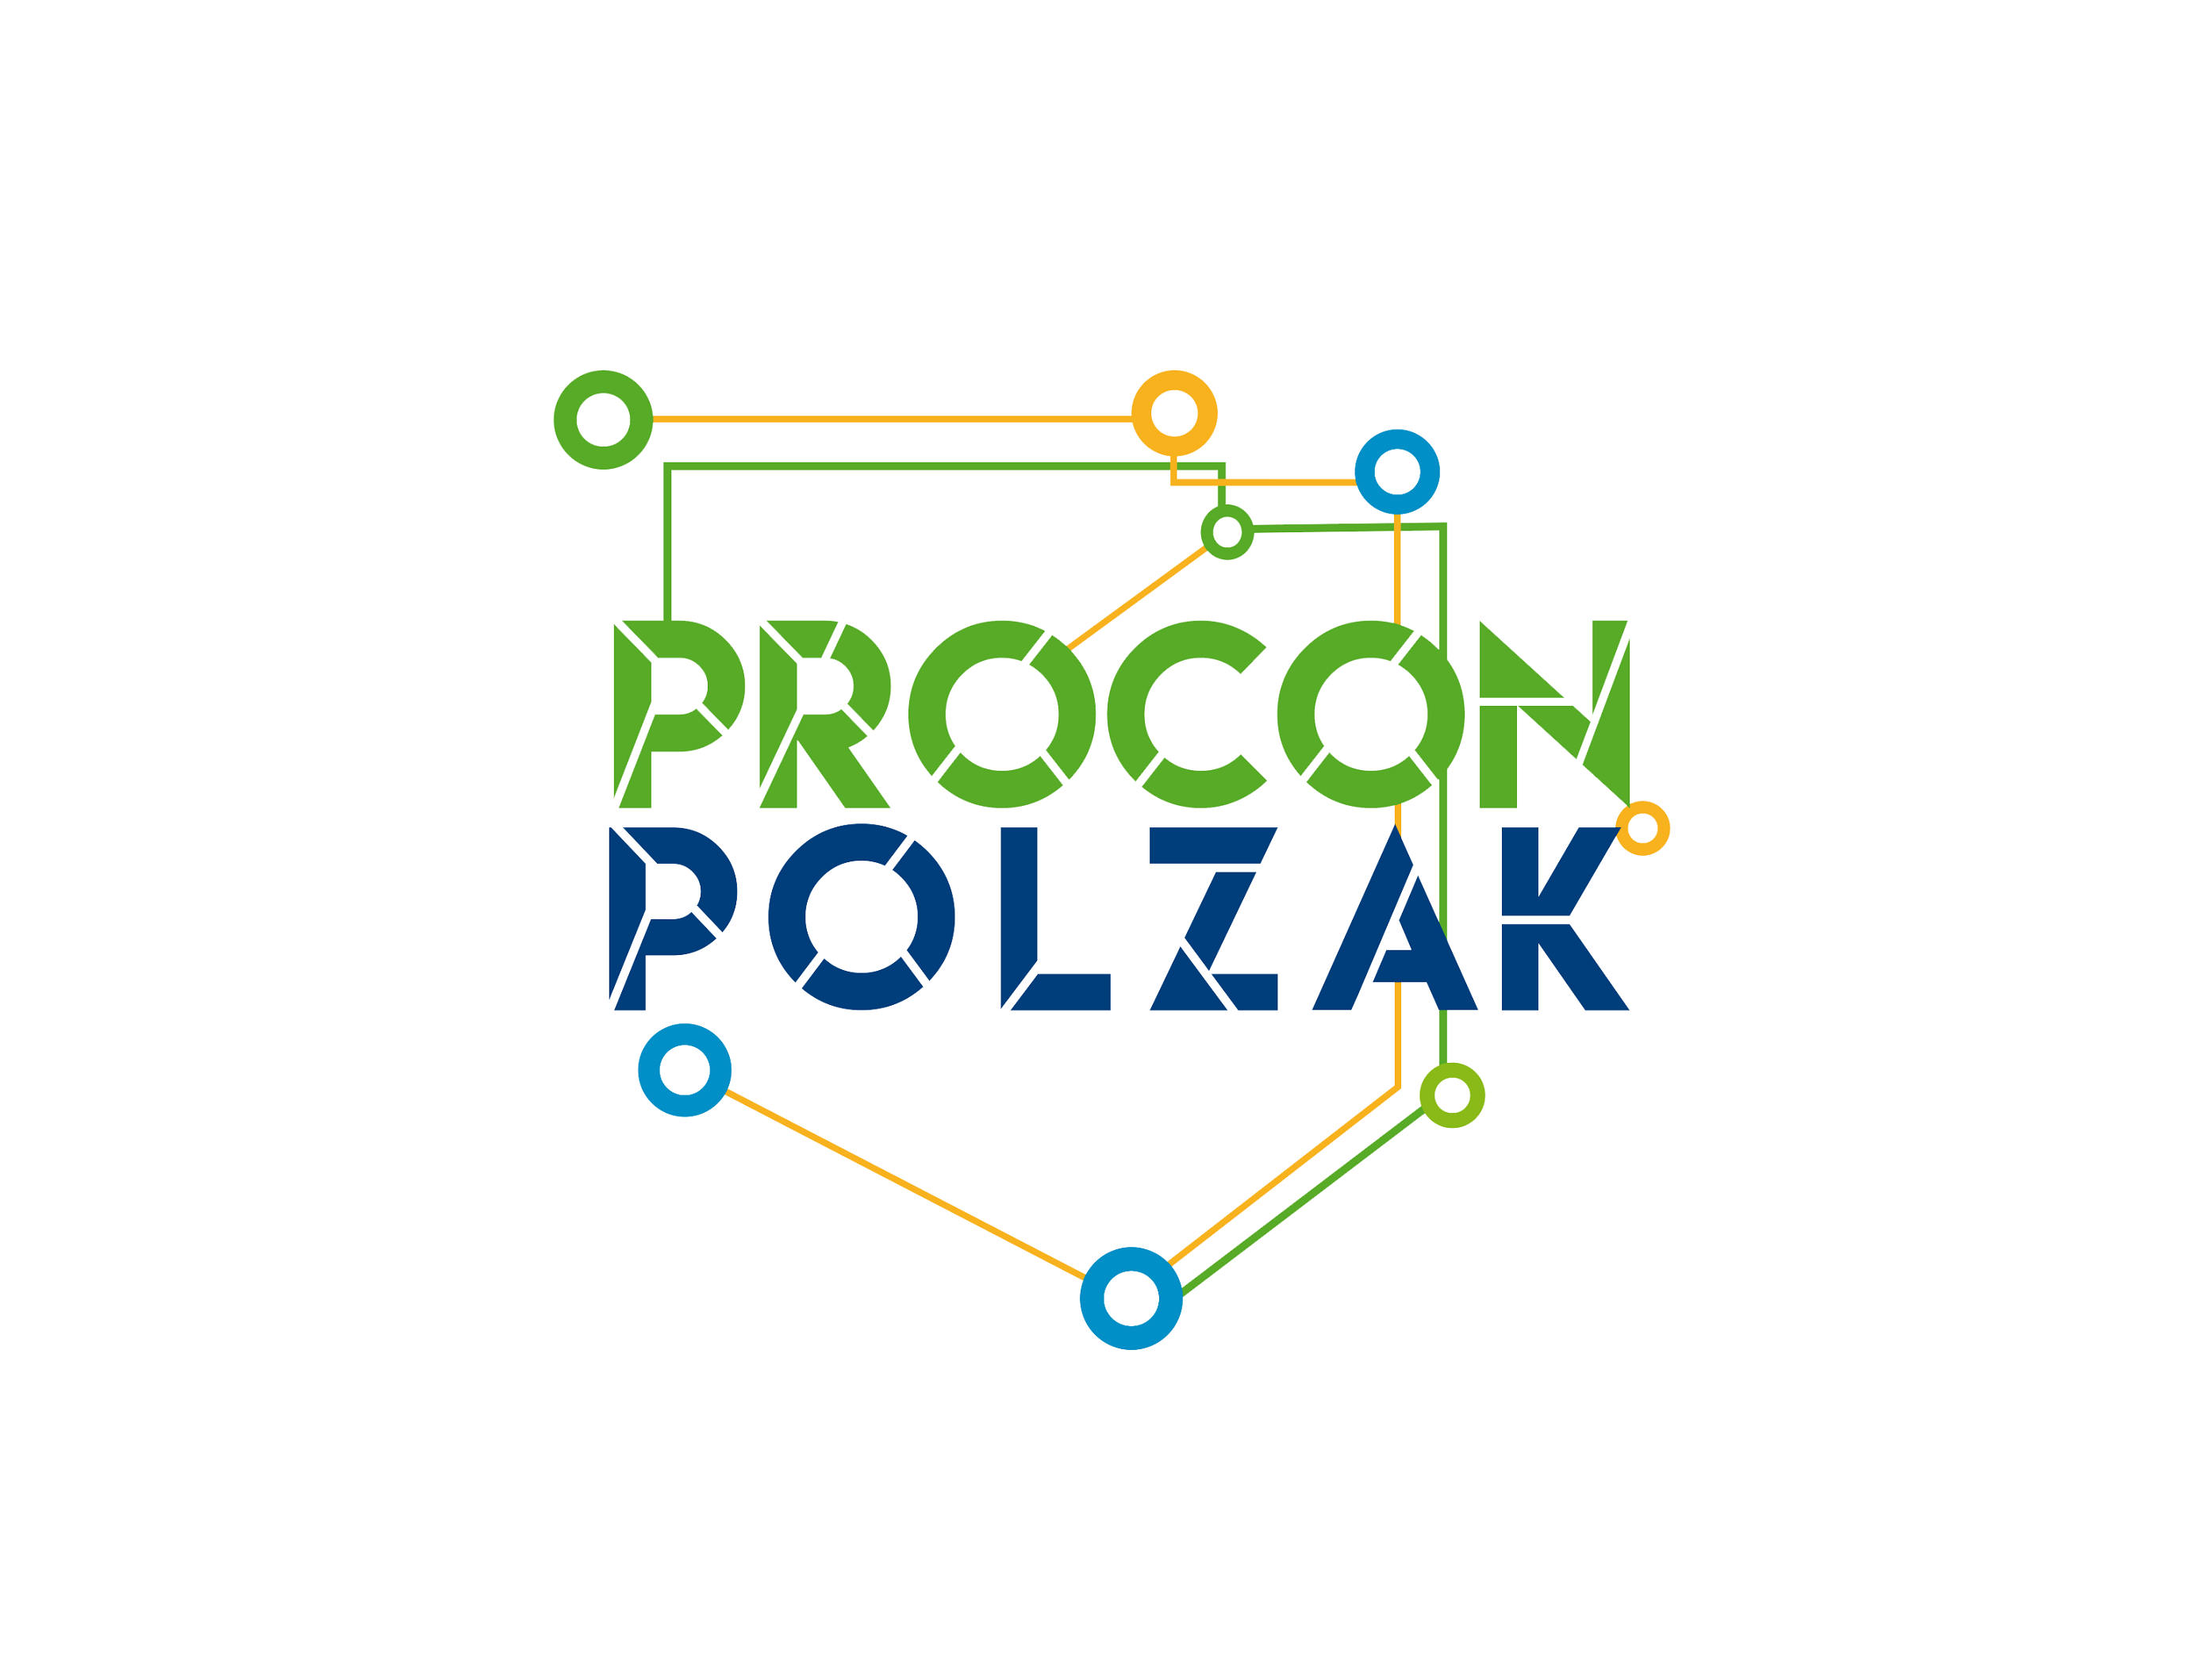 PROCON/POLZAK 2016